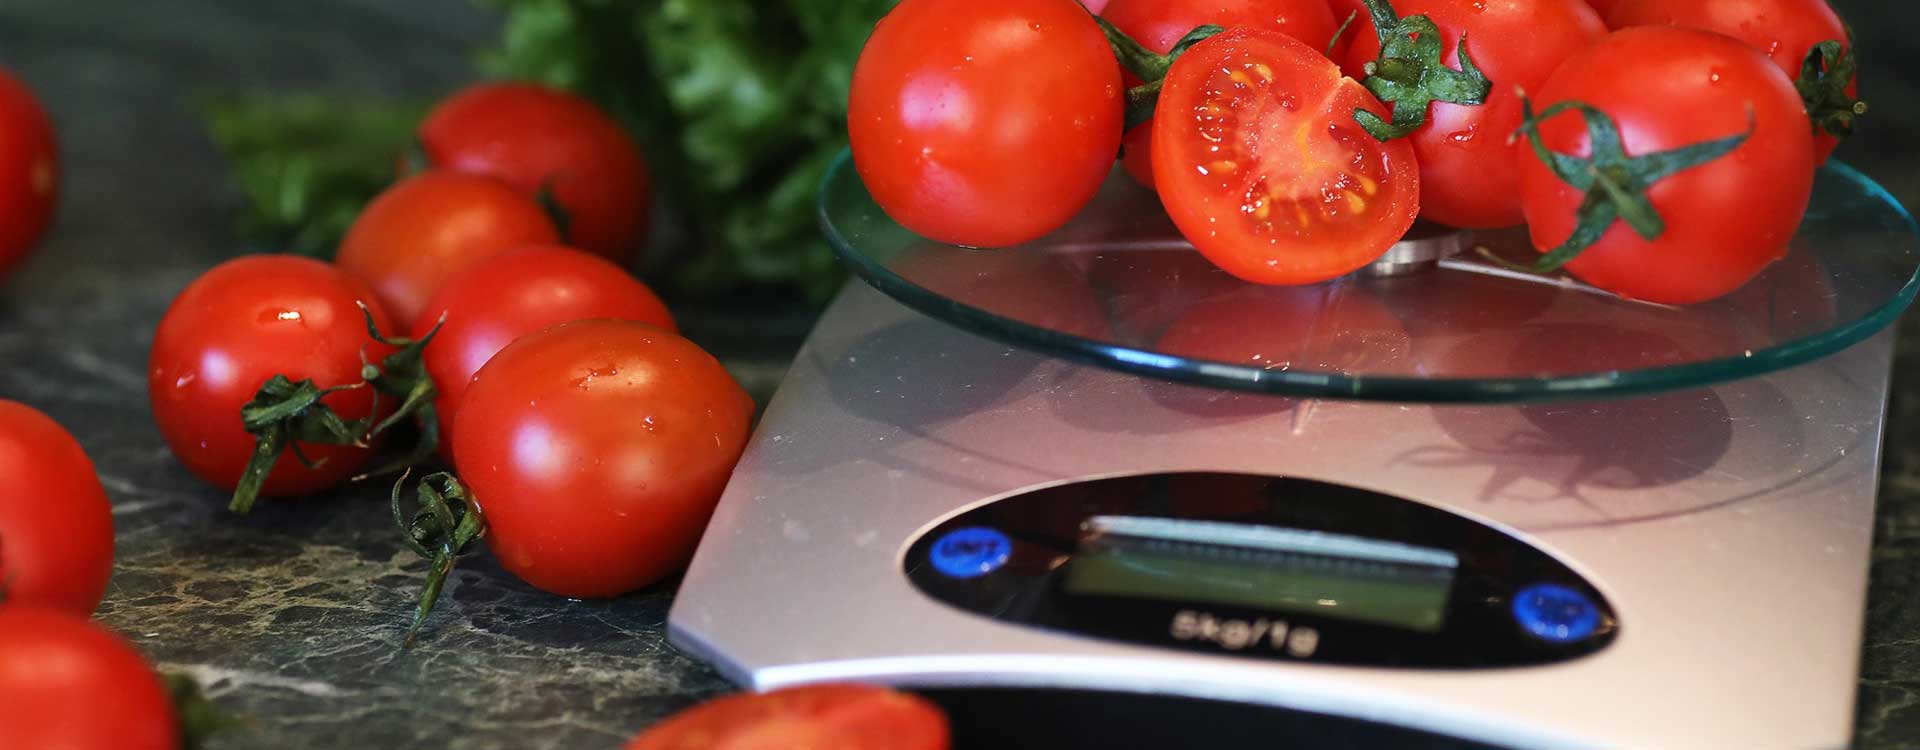 Wie viel wiegt Obst und Gemüse durchschnittlich